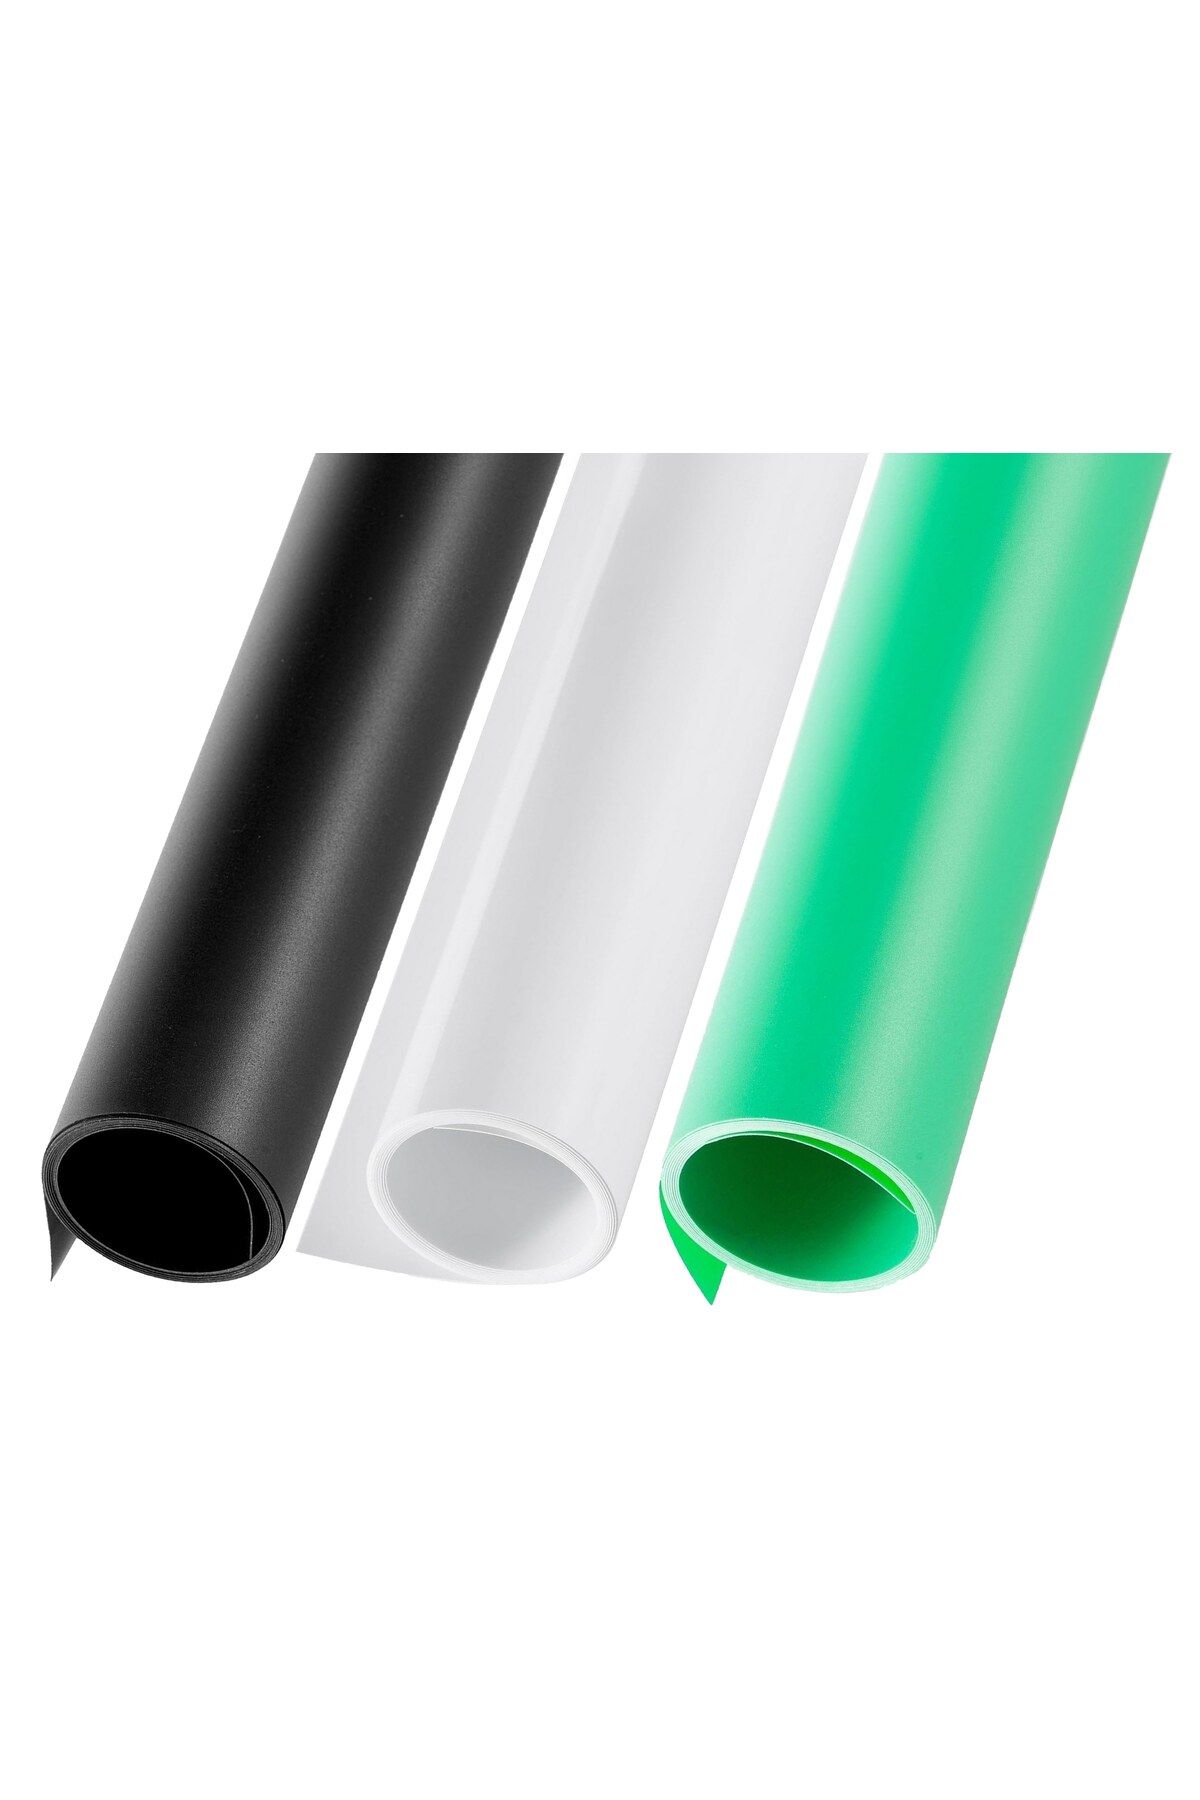 Tianya Çift Taraflı 60x130cm Beyaz , Siyah ve Yeşil PVC Zemin ve Fotograf Çekim Fonu Ürün Yemek Stüdyo vb.